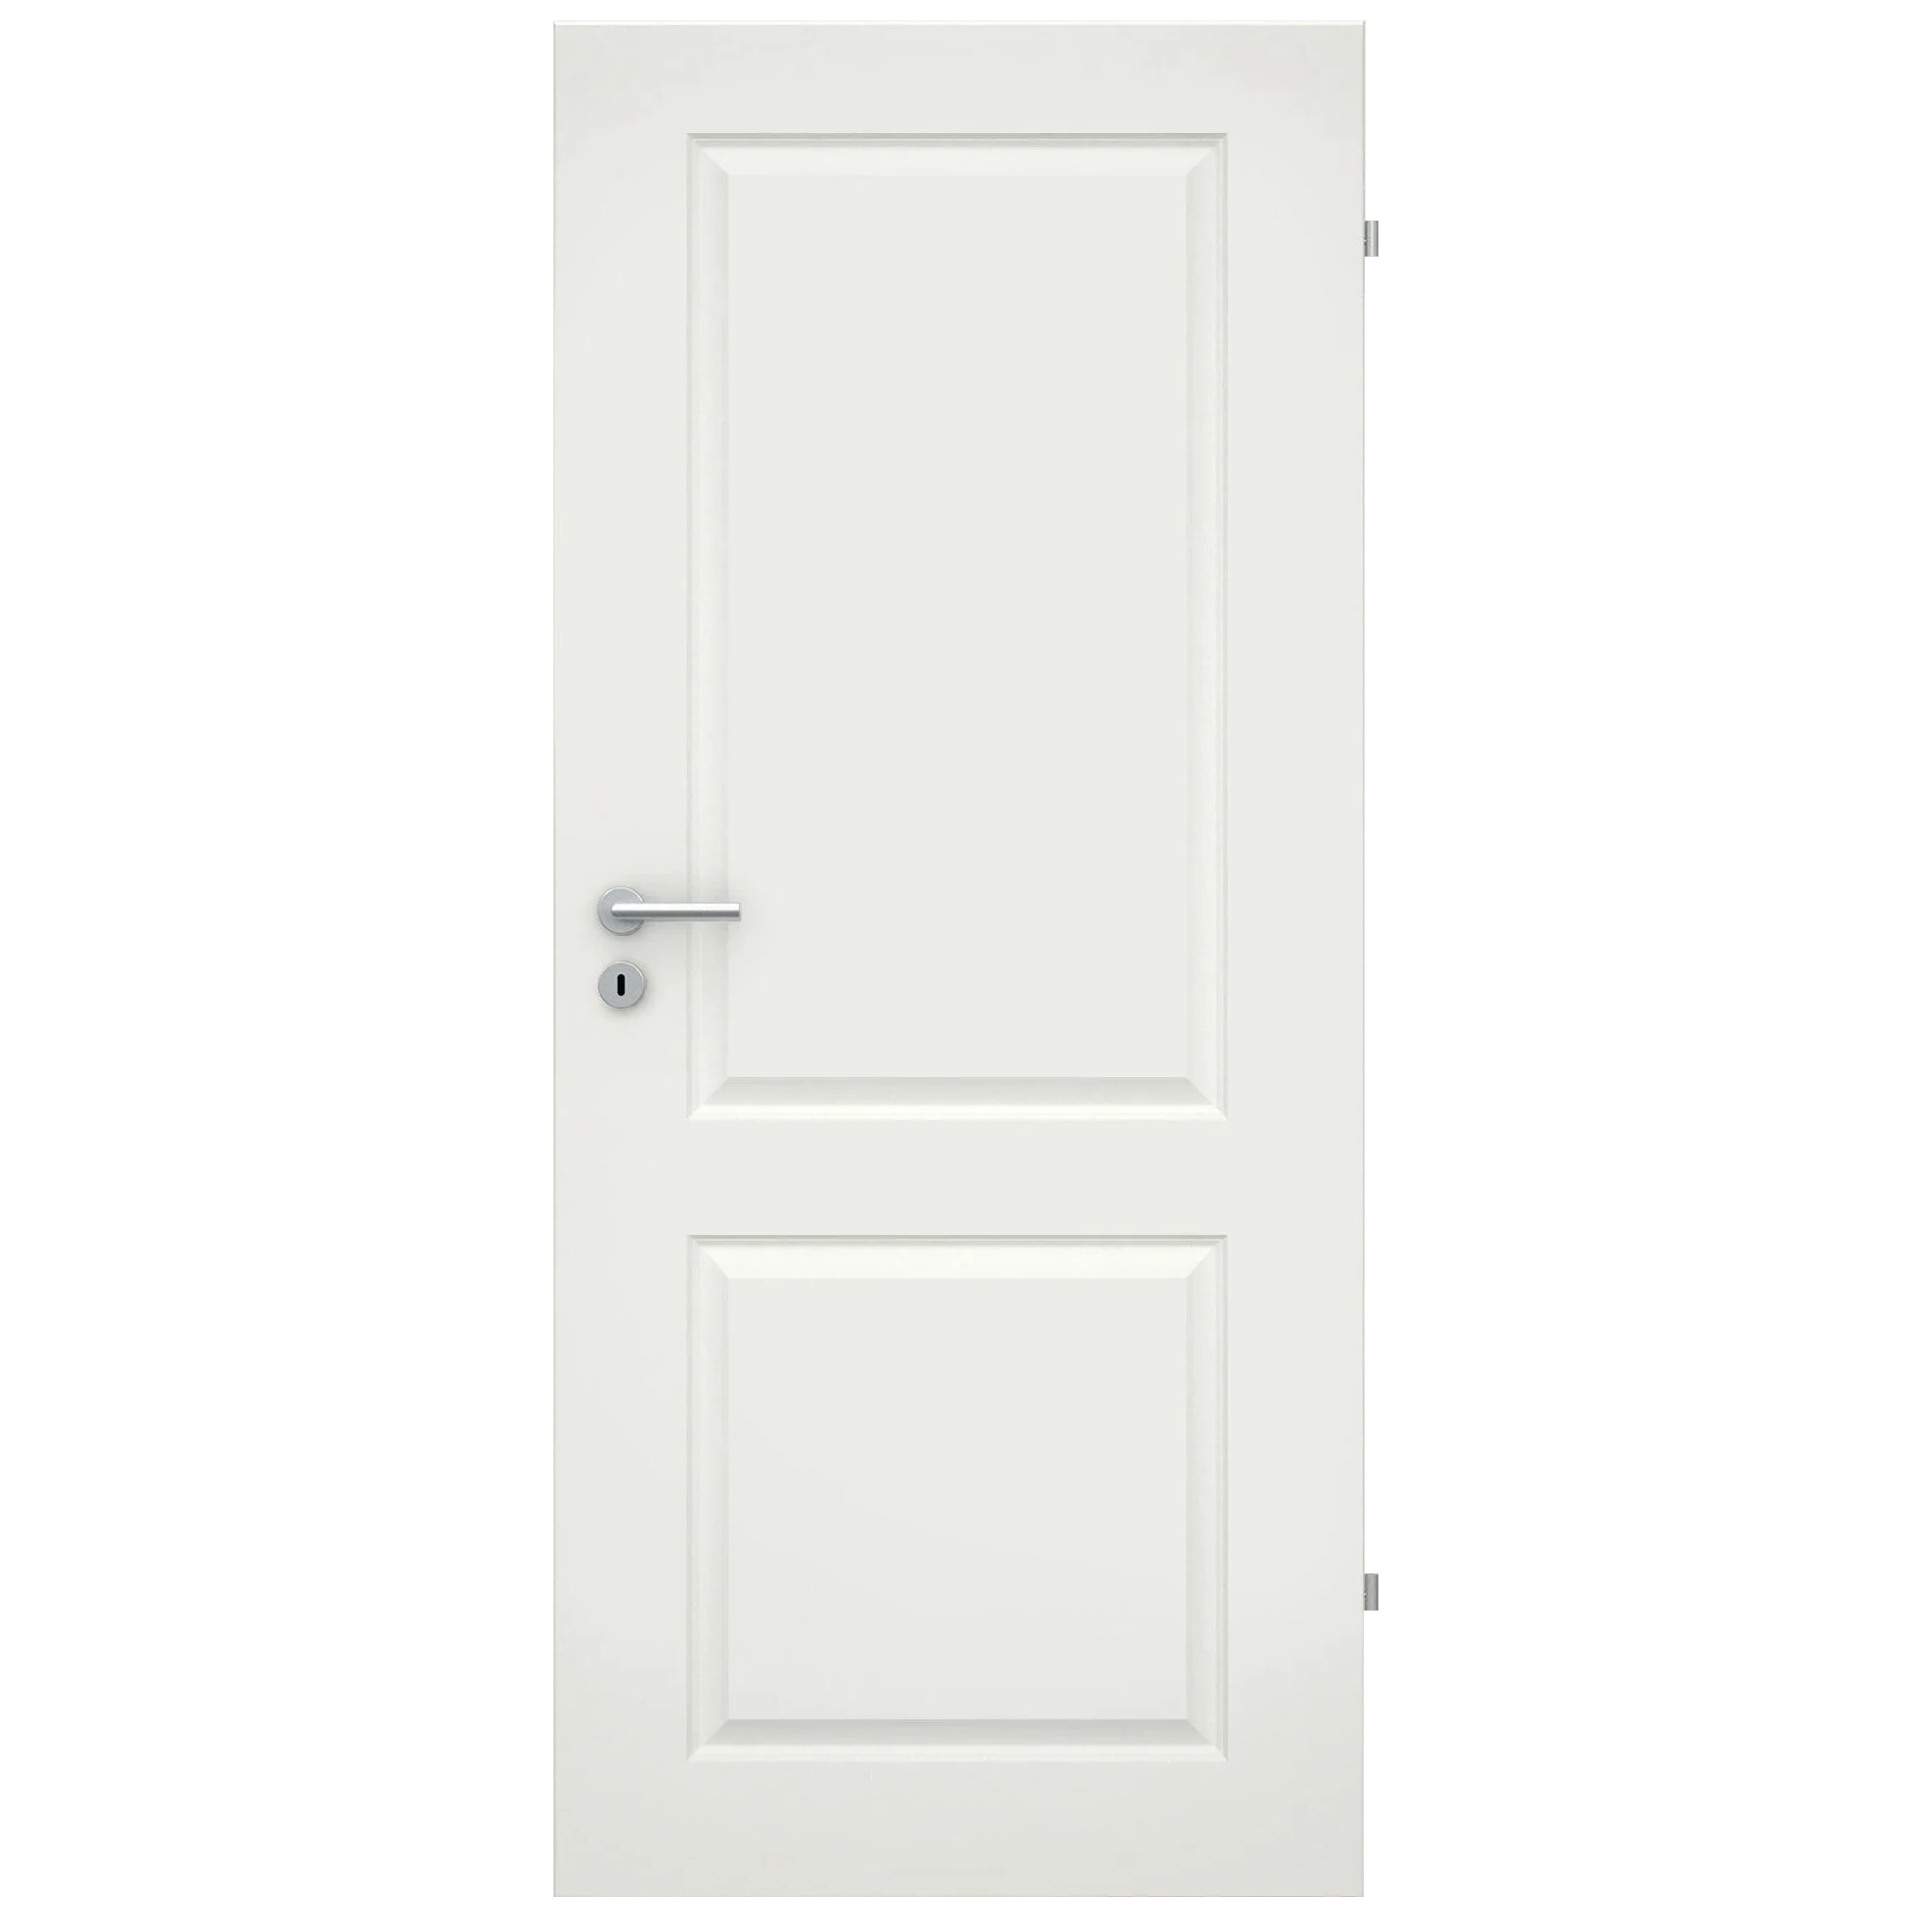 Zimmertür soft-weiß Stiltür mit 2 Kassetten Rundkante - Modell Stiltür K21